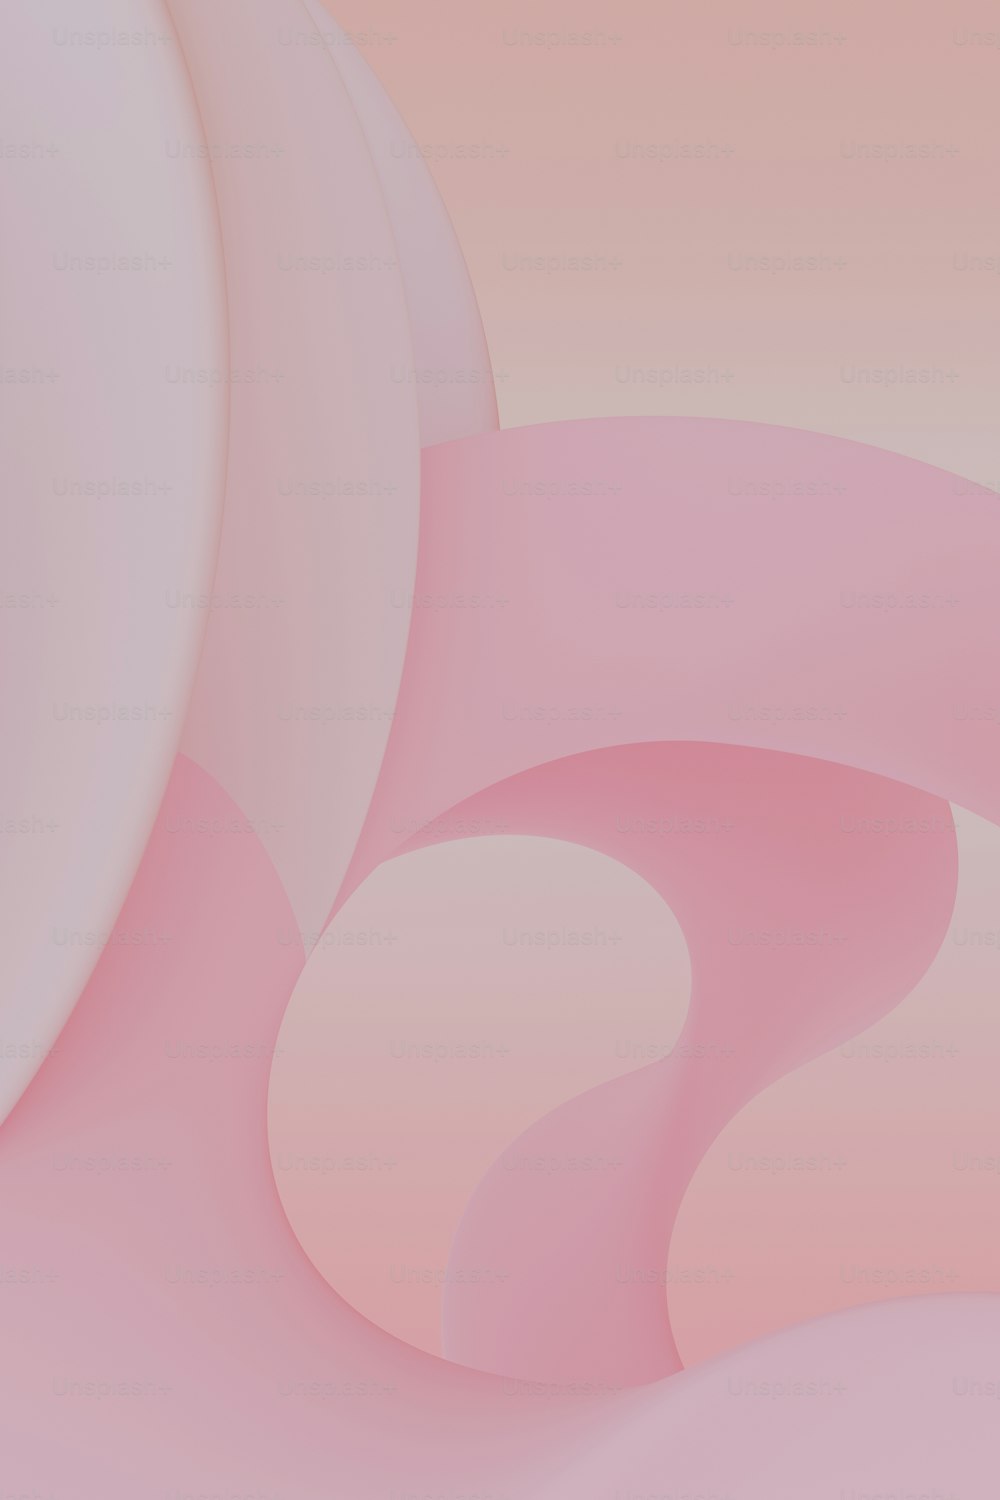 um fundo abstrato rosa e branco com formas curvas